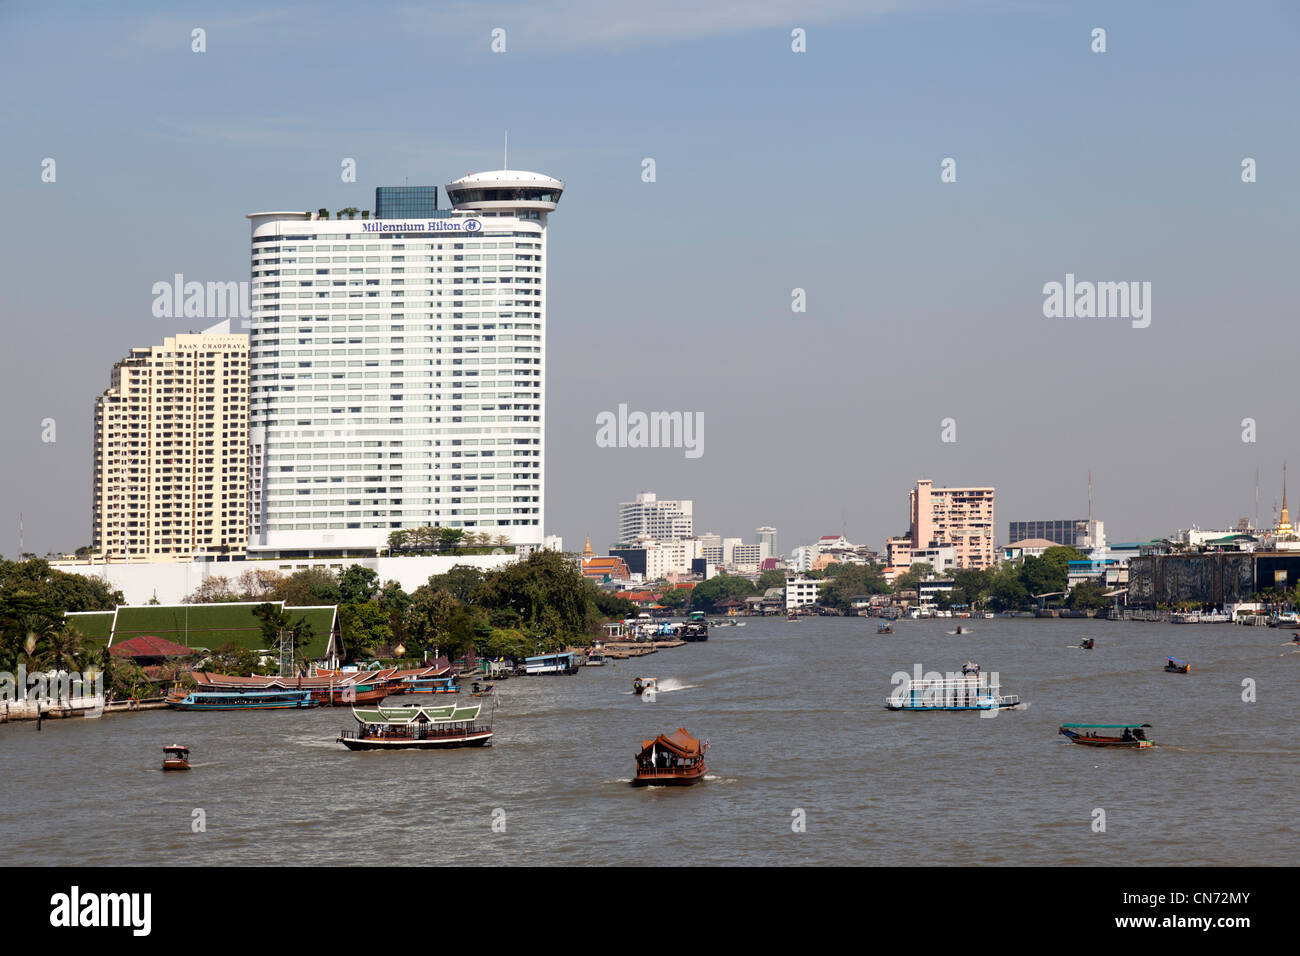 L intenso sul Fiume Chao Phraya il traffico (Bangkok - Tailandia). Le trafic intense fluviale sur le fleuve Chao Phraya à Bangkok. Foto Stock